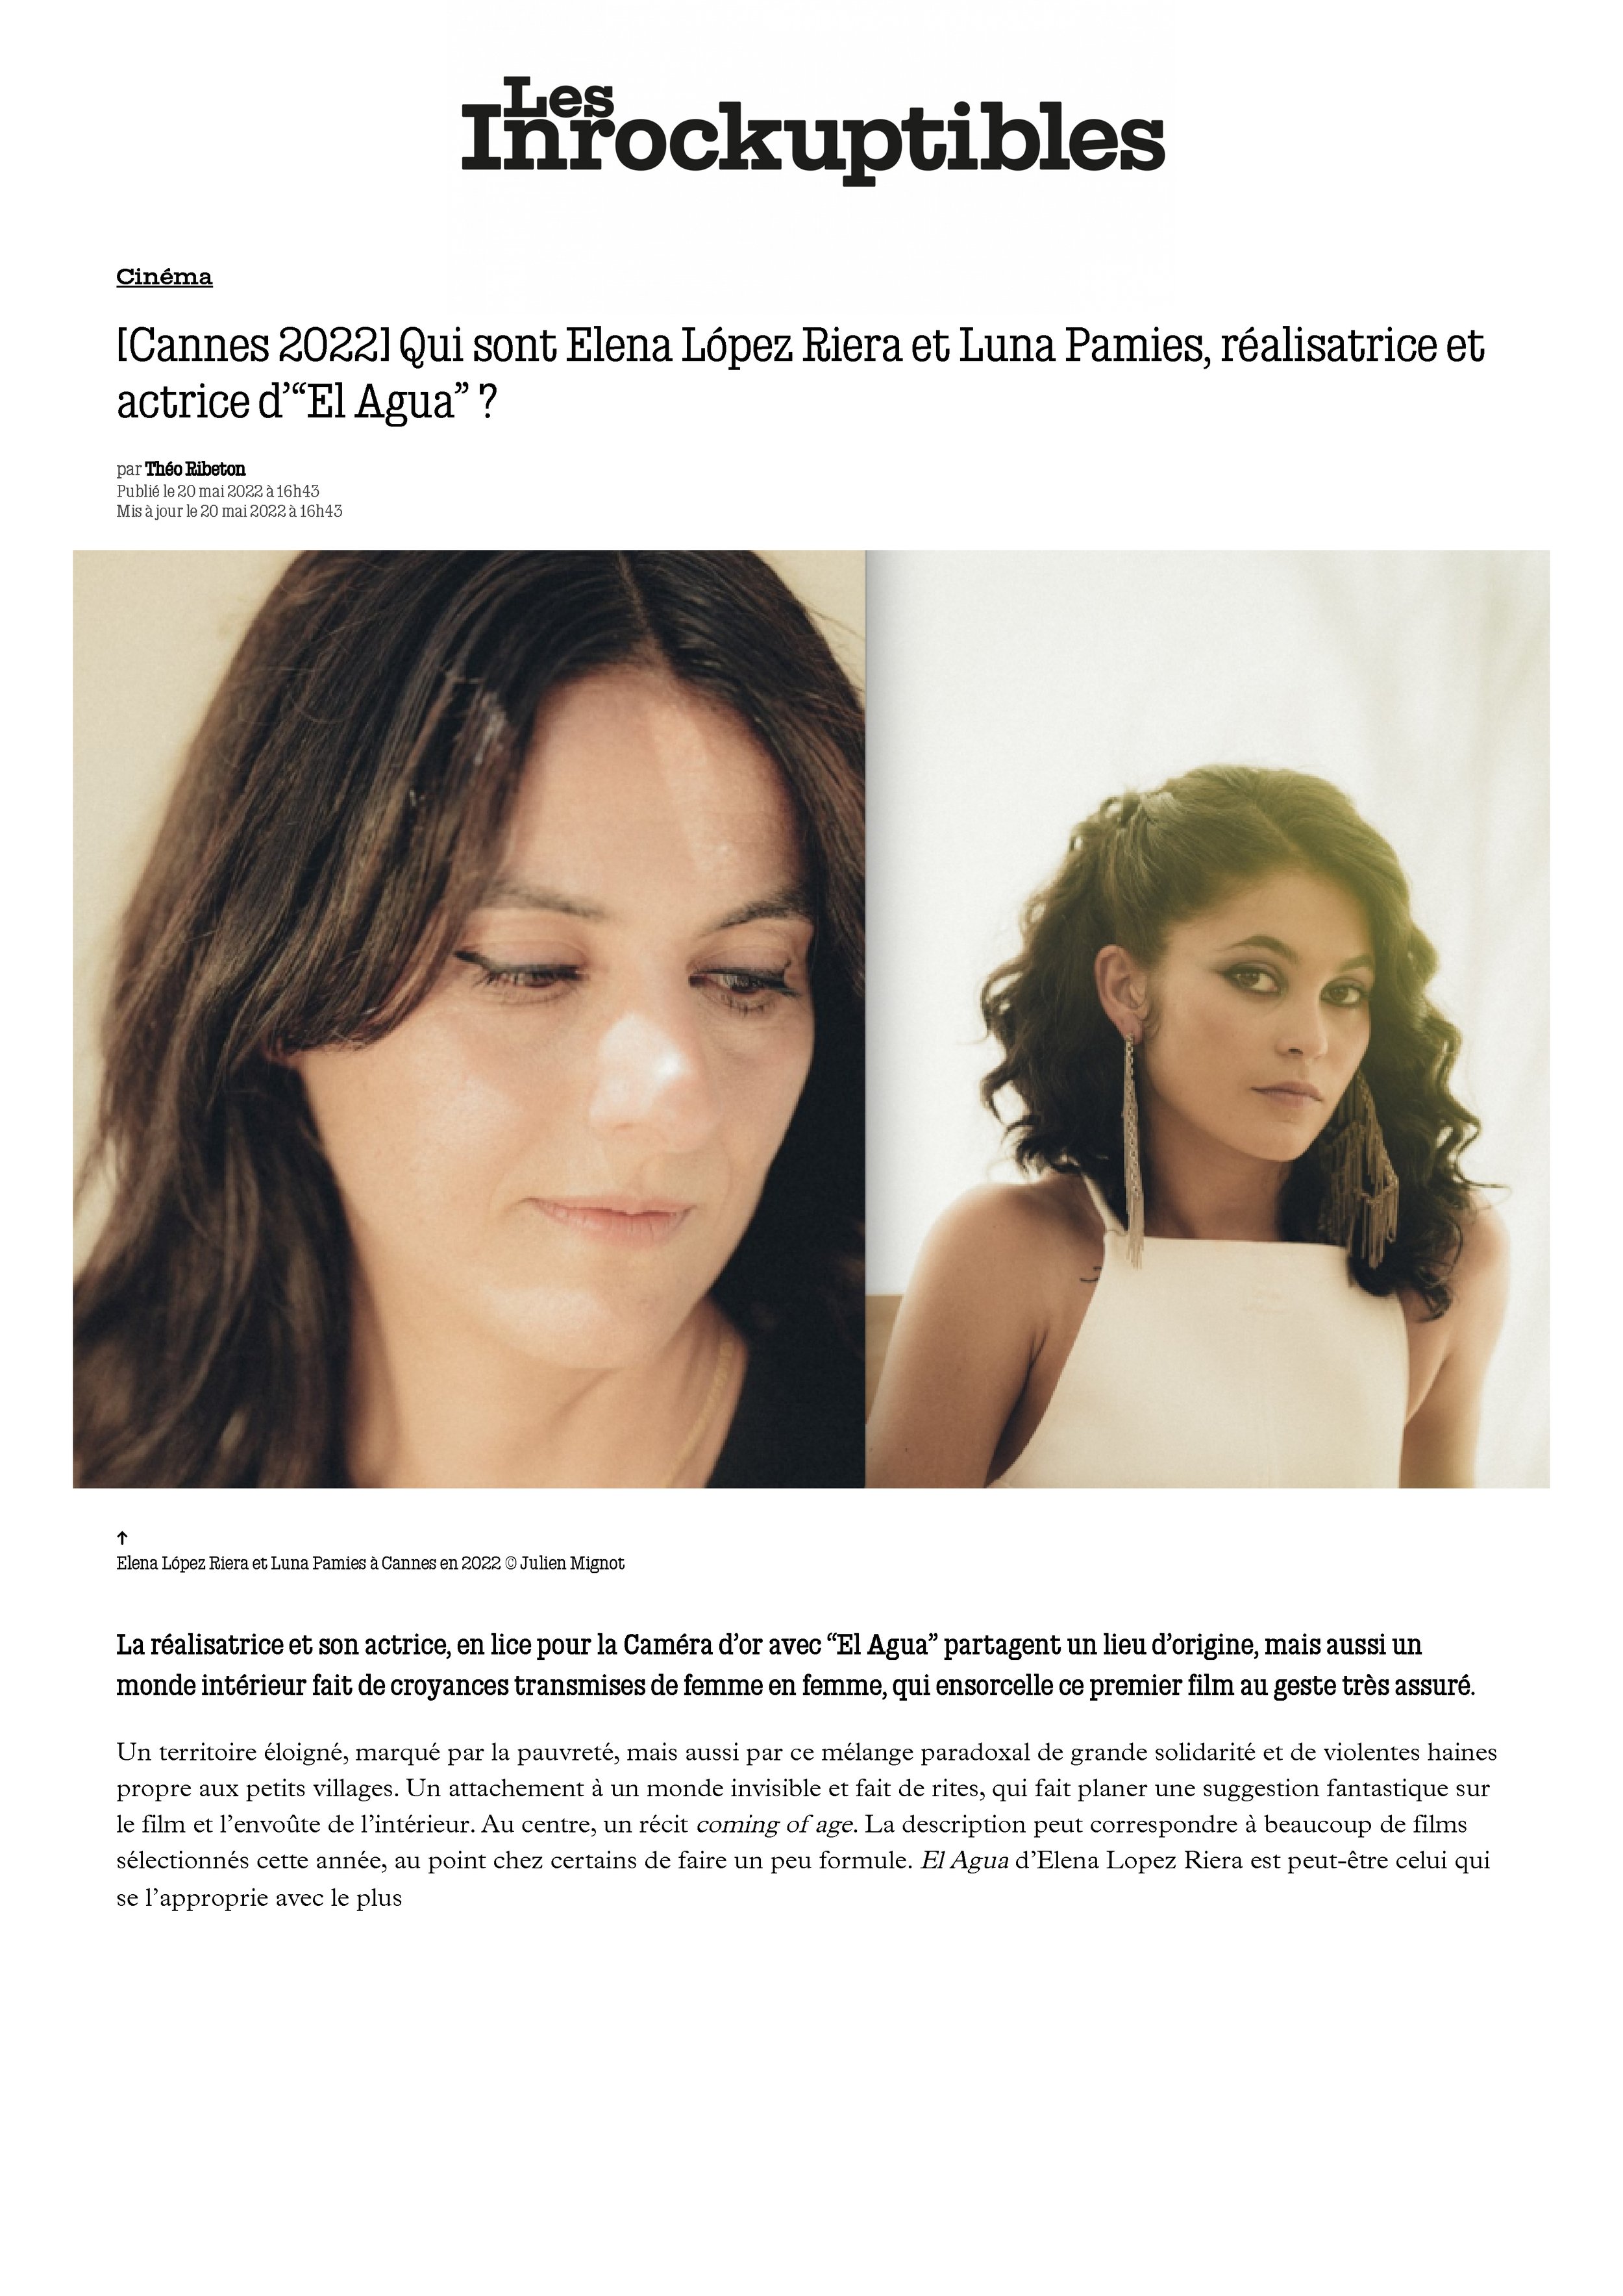 [Cannes 2022] Qui sont Elena López Riera et Luna Pamies, réalisatrice et actrice d'“El Agua” _ - Les Inrocks.jpg